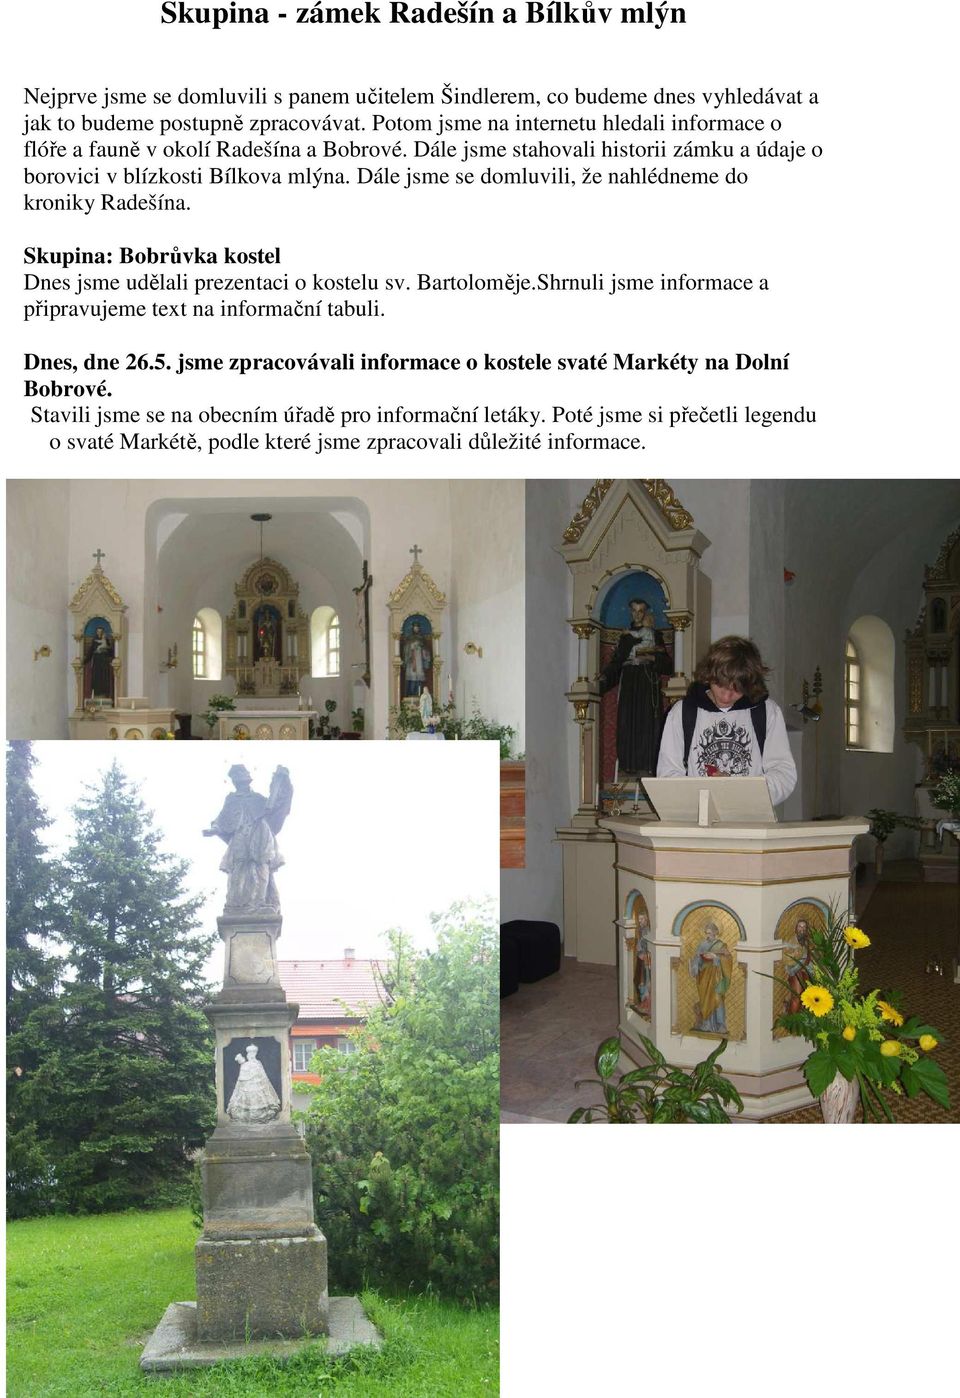 Dále jsme se domluvili, že nahlédneme do kroniky Radešína. Skupina: Bobrůvka kostel Dnes jsme udělali prezentaci o kostelu sv. Bartoloměje.